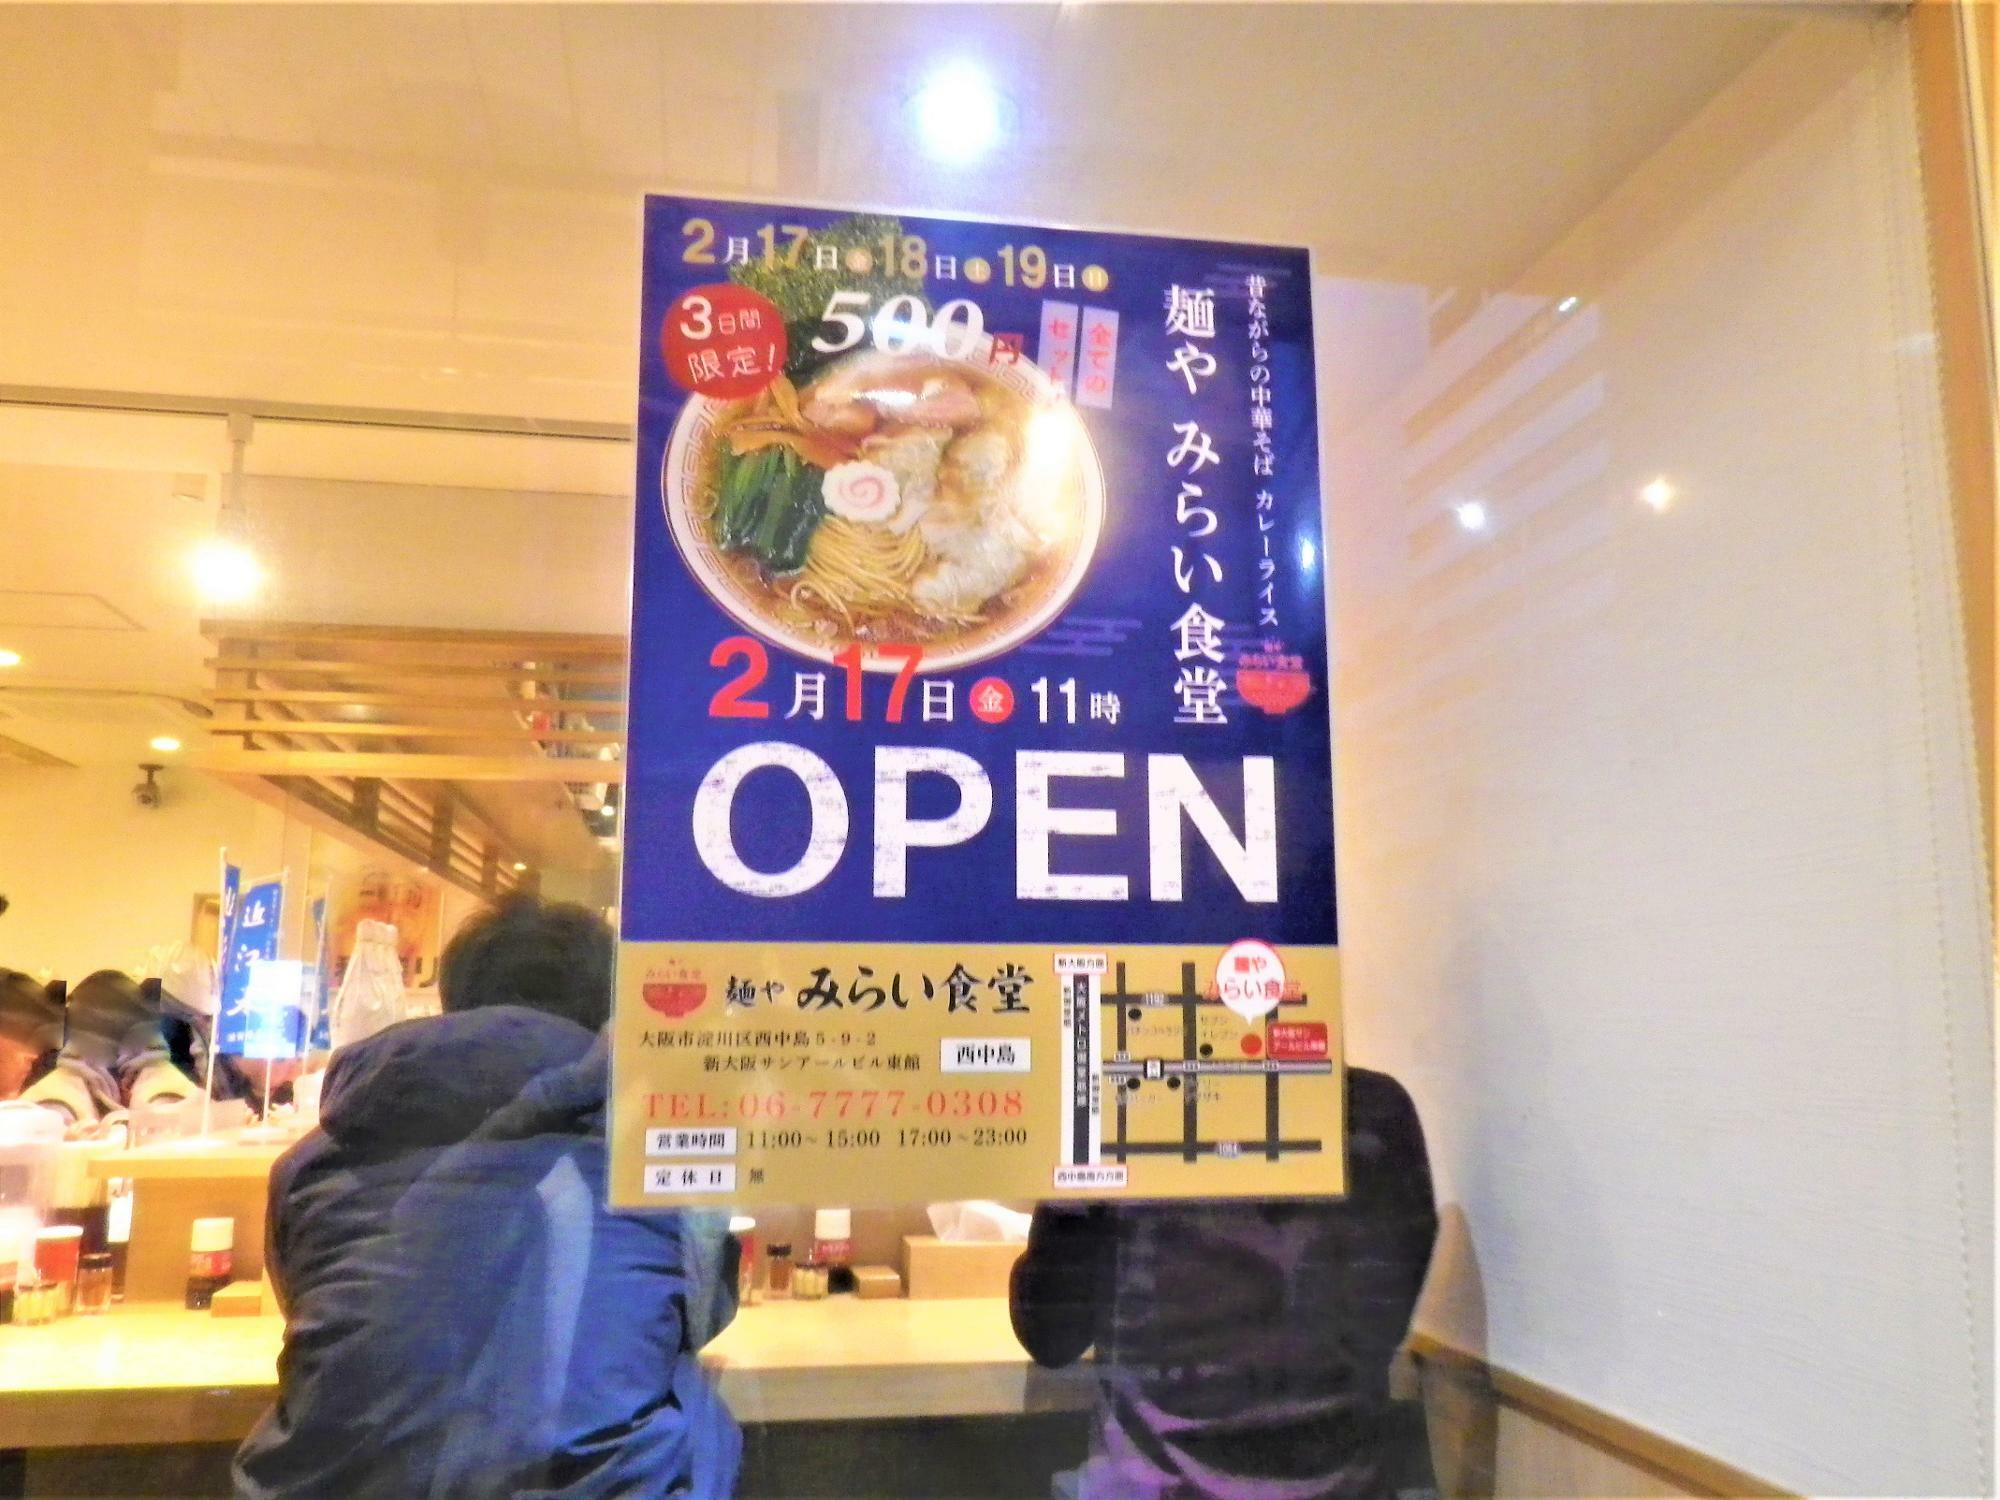 2月19日までのオープン3日間はセットが500円の大サービス。